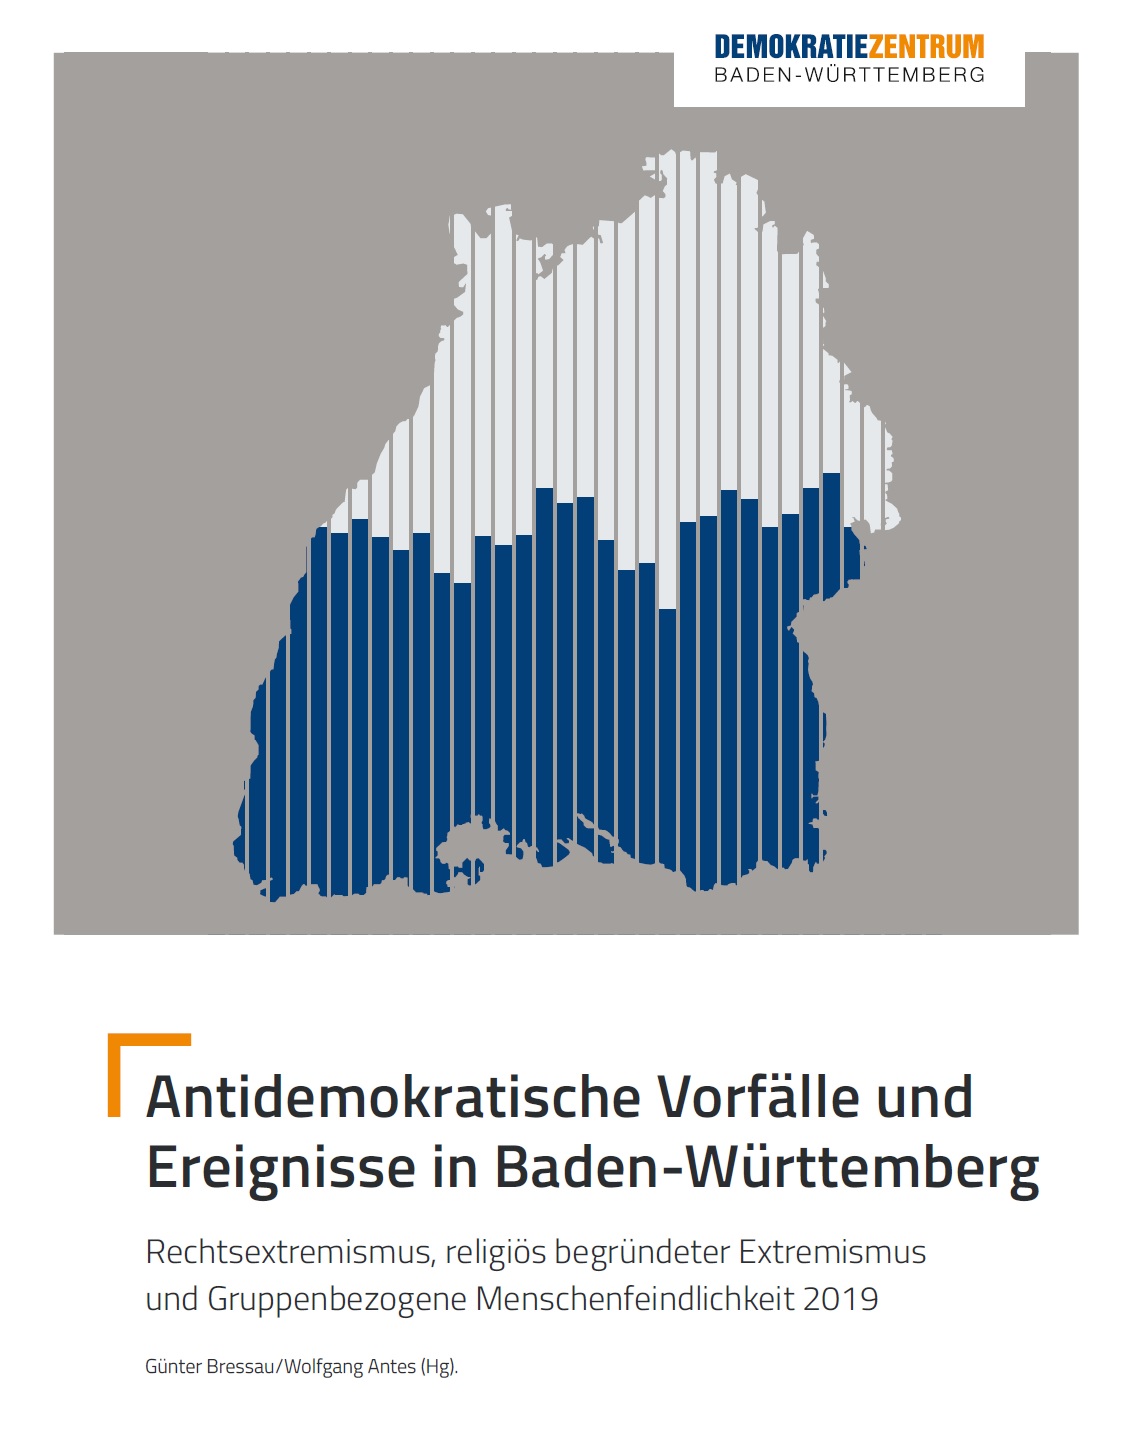 Auf dem Bild sieht man die Konturen des Bundeslandes Baden-Württemberg, das mit unterschiedlich gefärbten Streifen gefüllt ist. Darunter steht Antidemokratische Vorfälle 2019 und Ereignisse in Baden-Württemberg Rechtsextremismus, religiös begründeter Extremismus und Gruppenbezogene Menschenfeindlichkeit